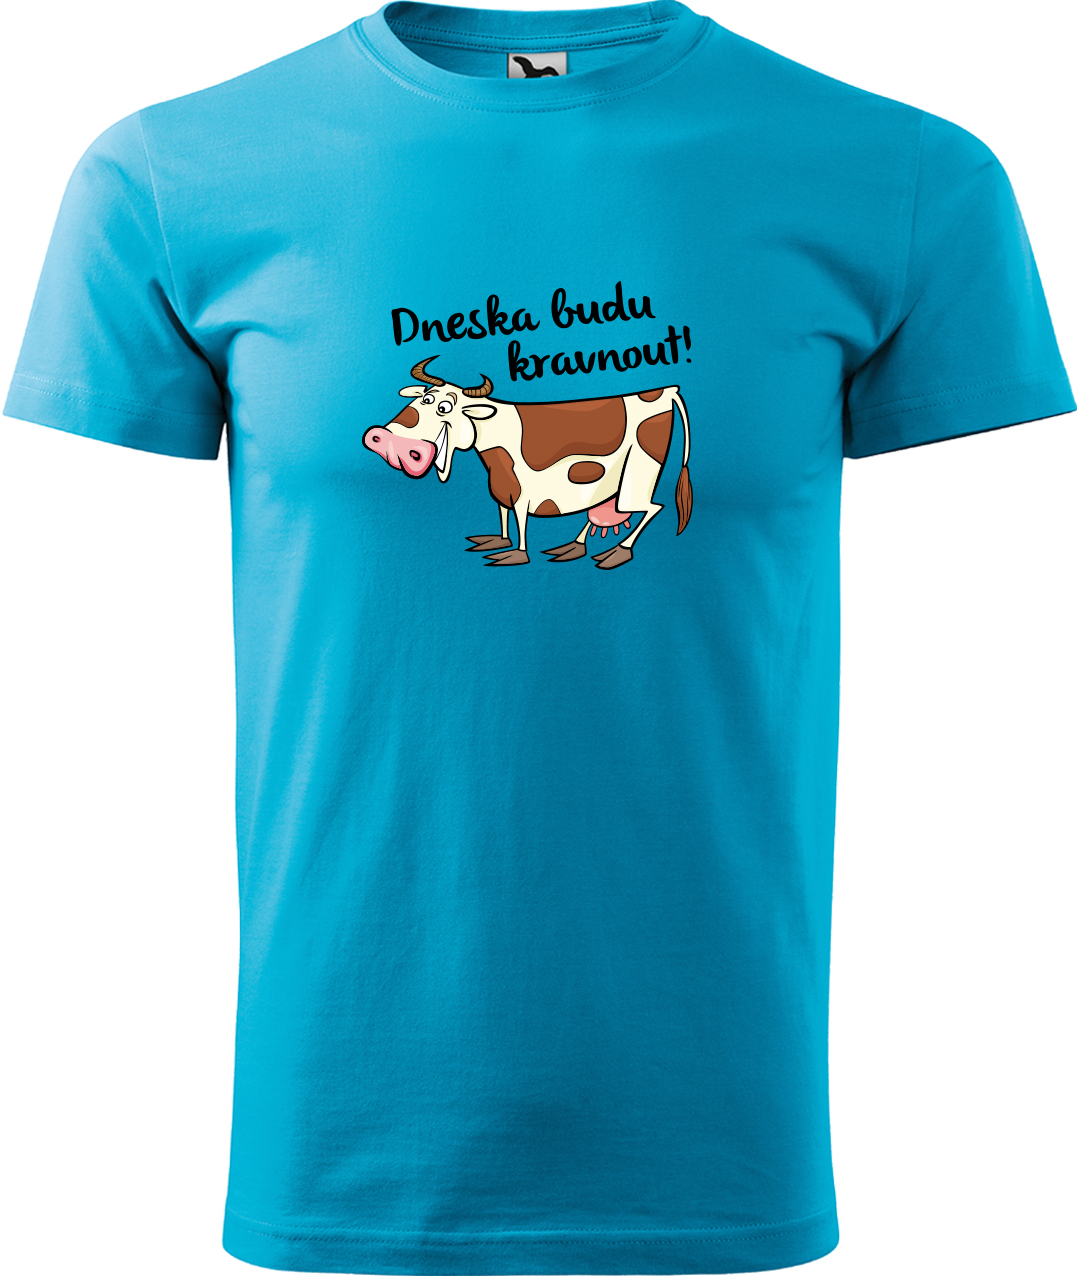 Pánské tričko s krávou - Dneska budu kravnout! Velikost: 3XL, Barva: Tyrkysová (44), Střih: pánský